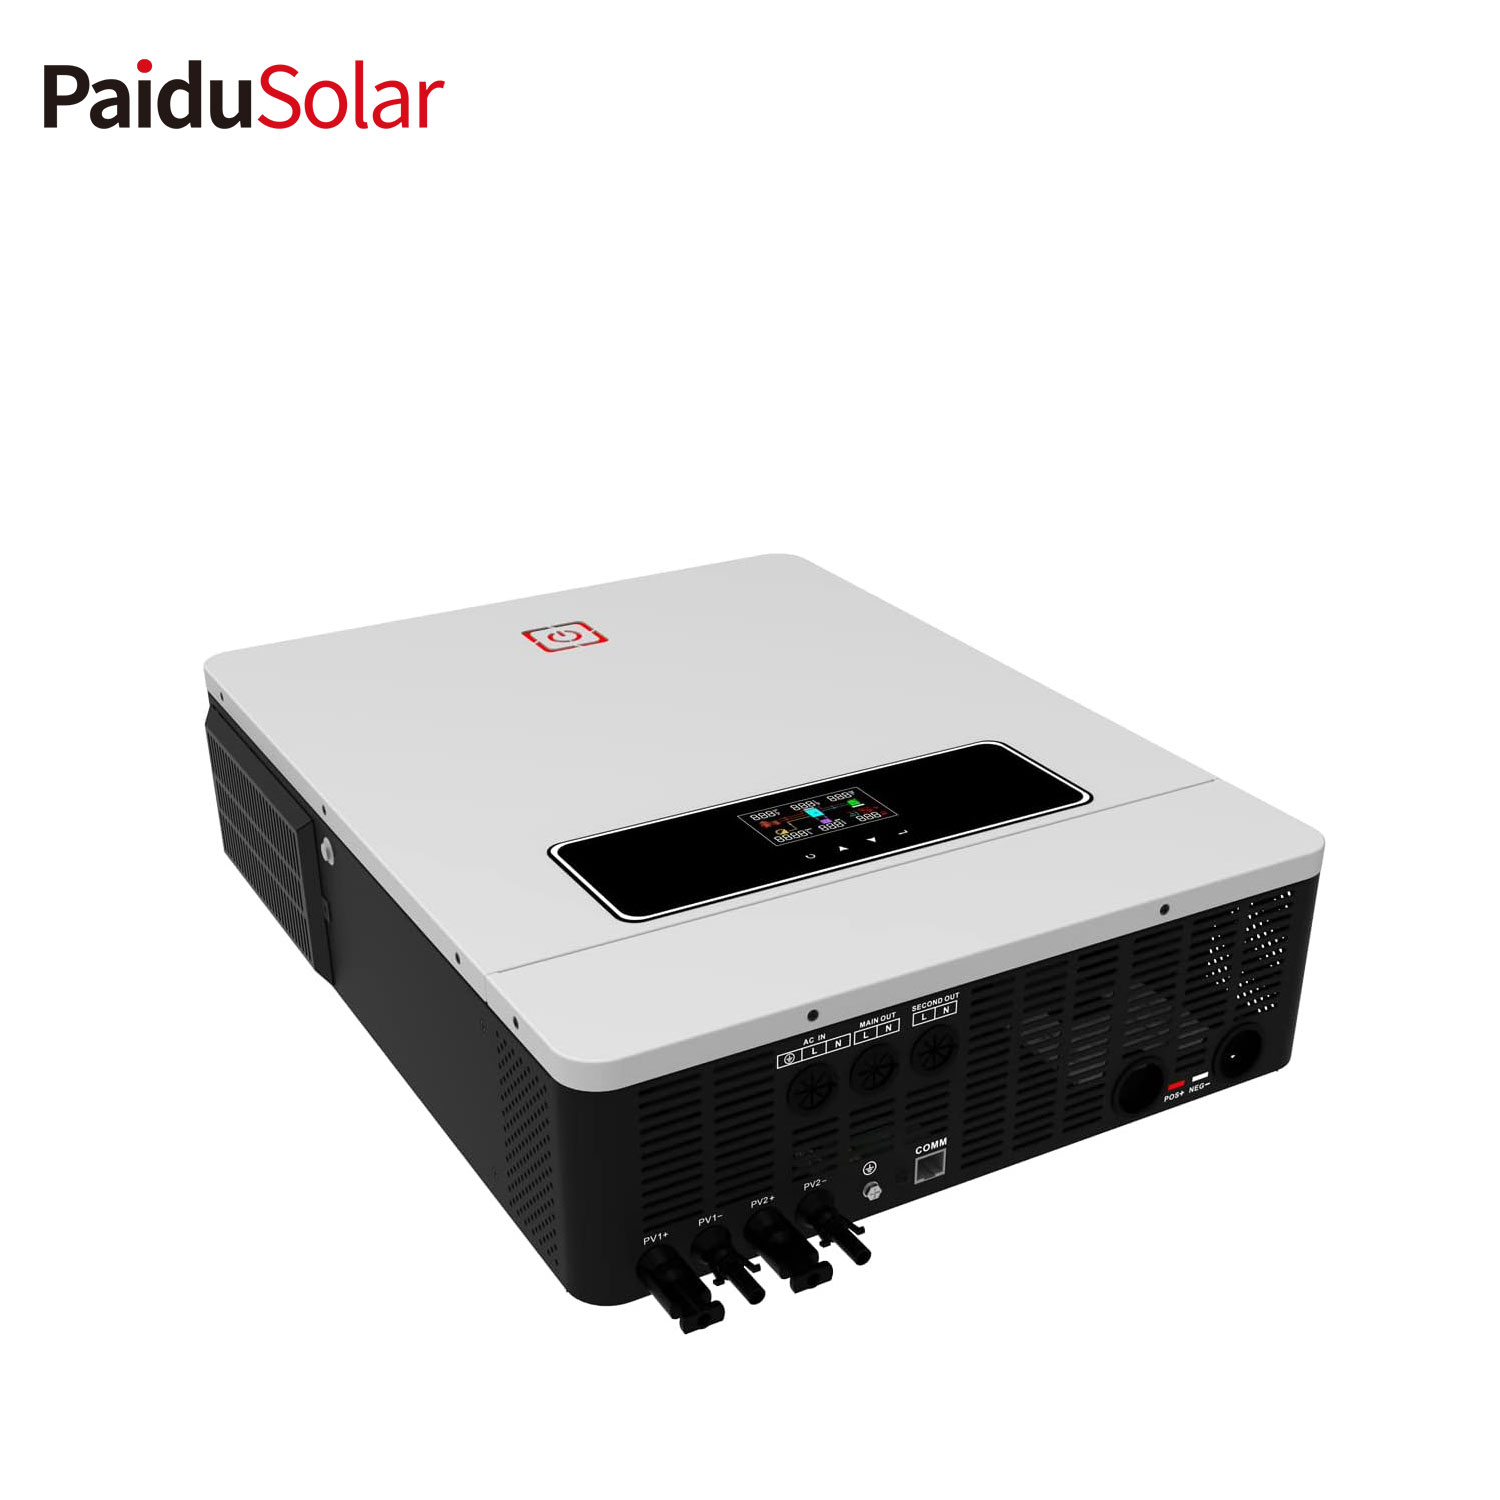 PaiduSolar 8.2KW Solar Hybrid Inverter Indbygget Charge Controller og Pure Sine Wave Inverter til...